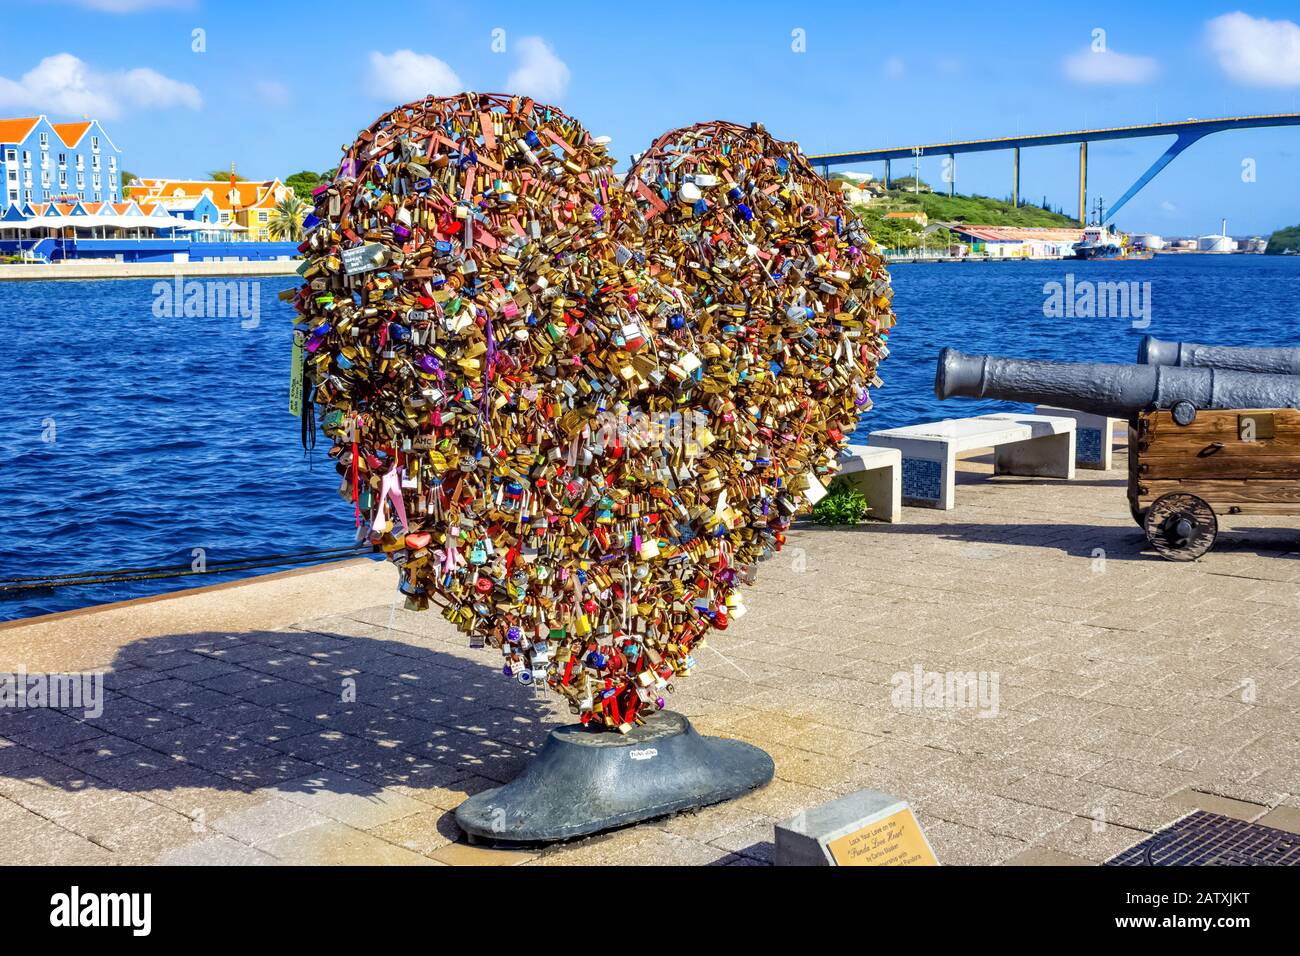 Willemstad, Curaçao - 15 décembre 2019: Écluses d'Amour sculpture à Willemstad, Curaçao. Banque D'Images